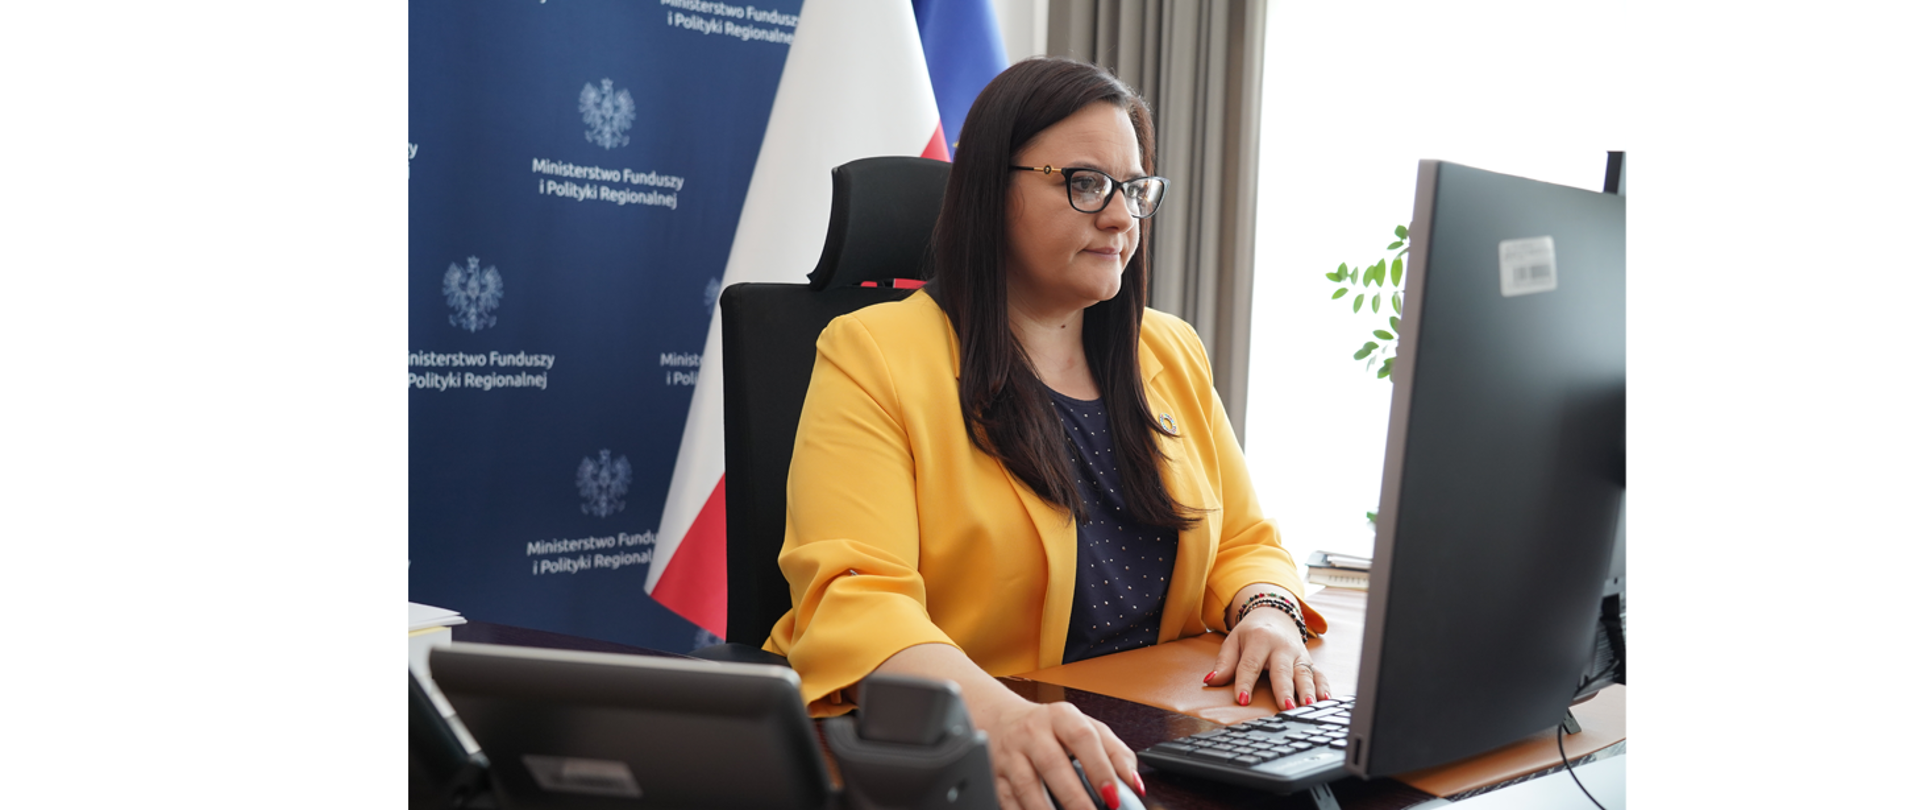 Wiceminister Małgorzata Jarosińska-Jedynak przed monitorem